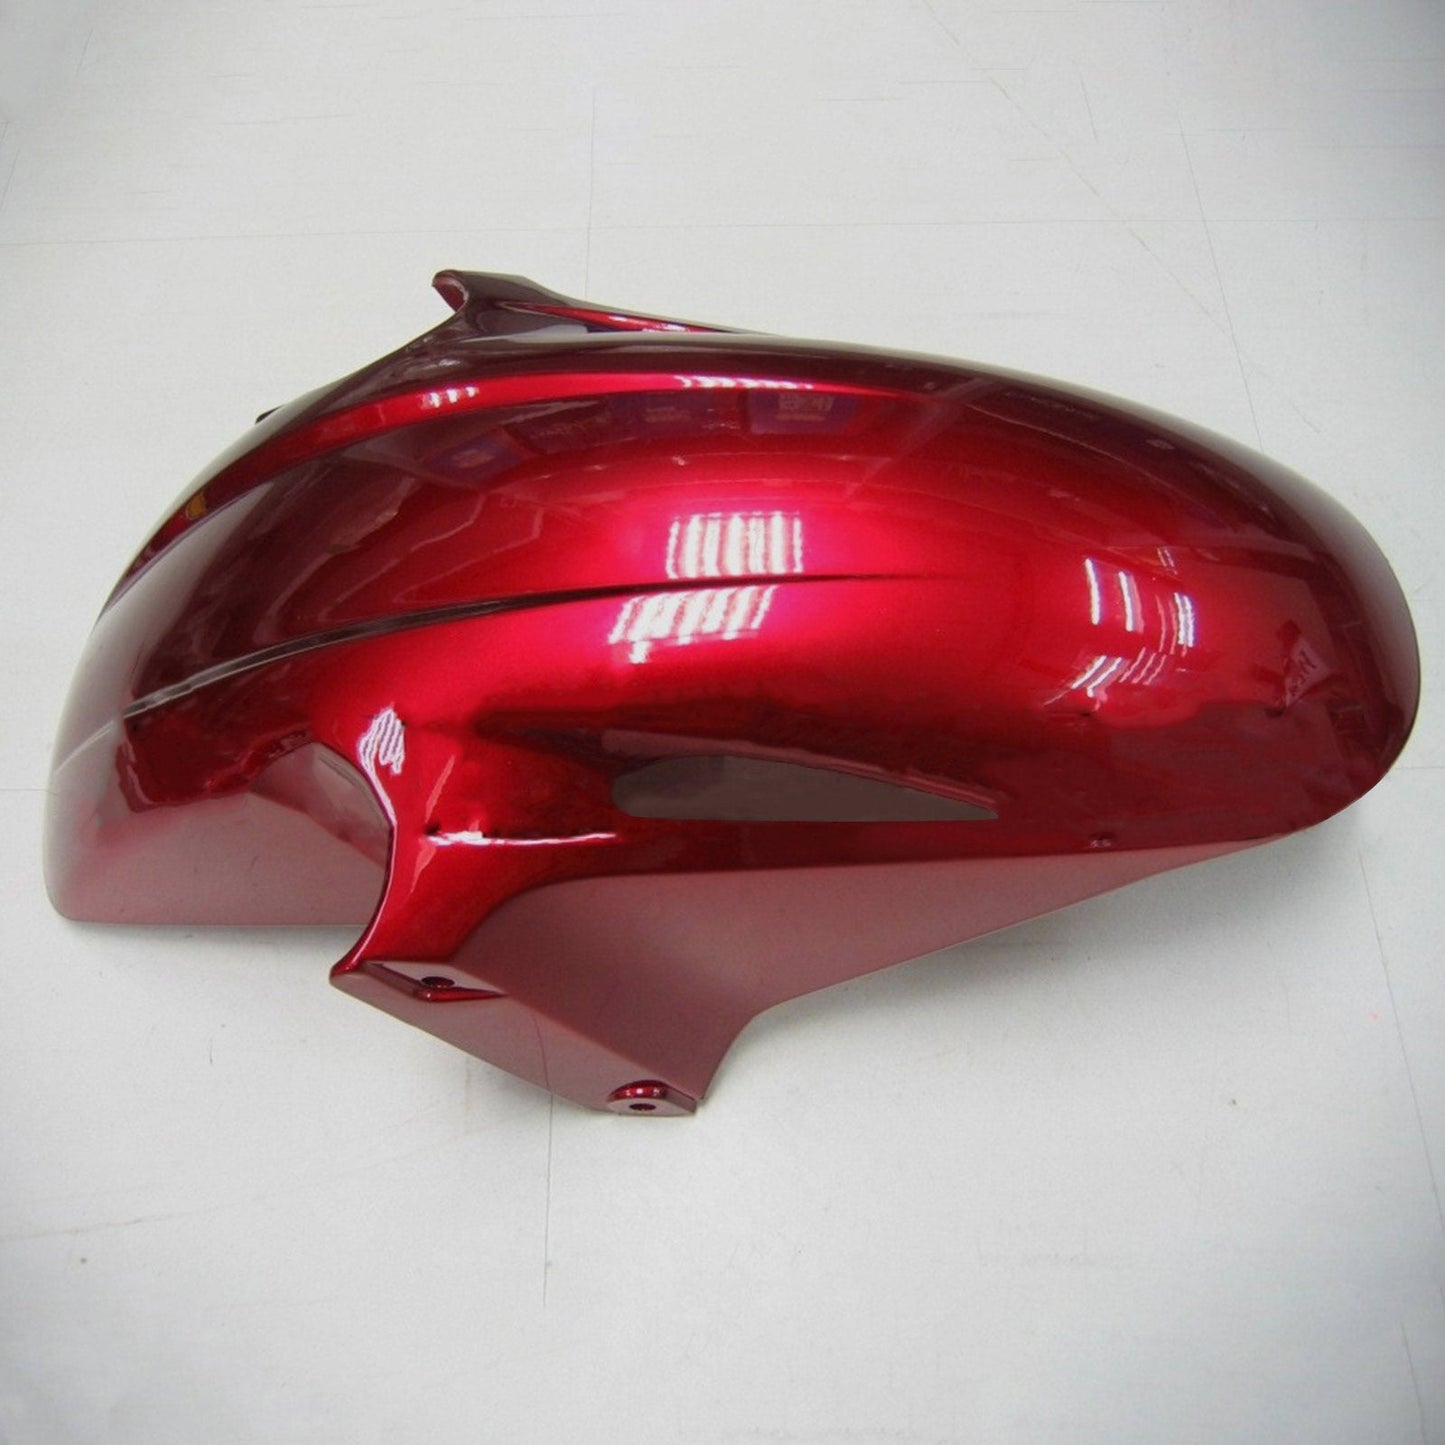 Amotopart 2002-2012 Honda VFR800 Gloss Redfairing Kit